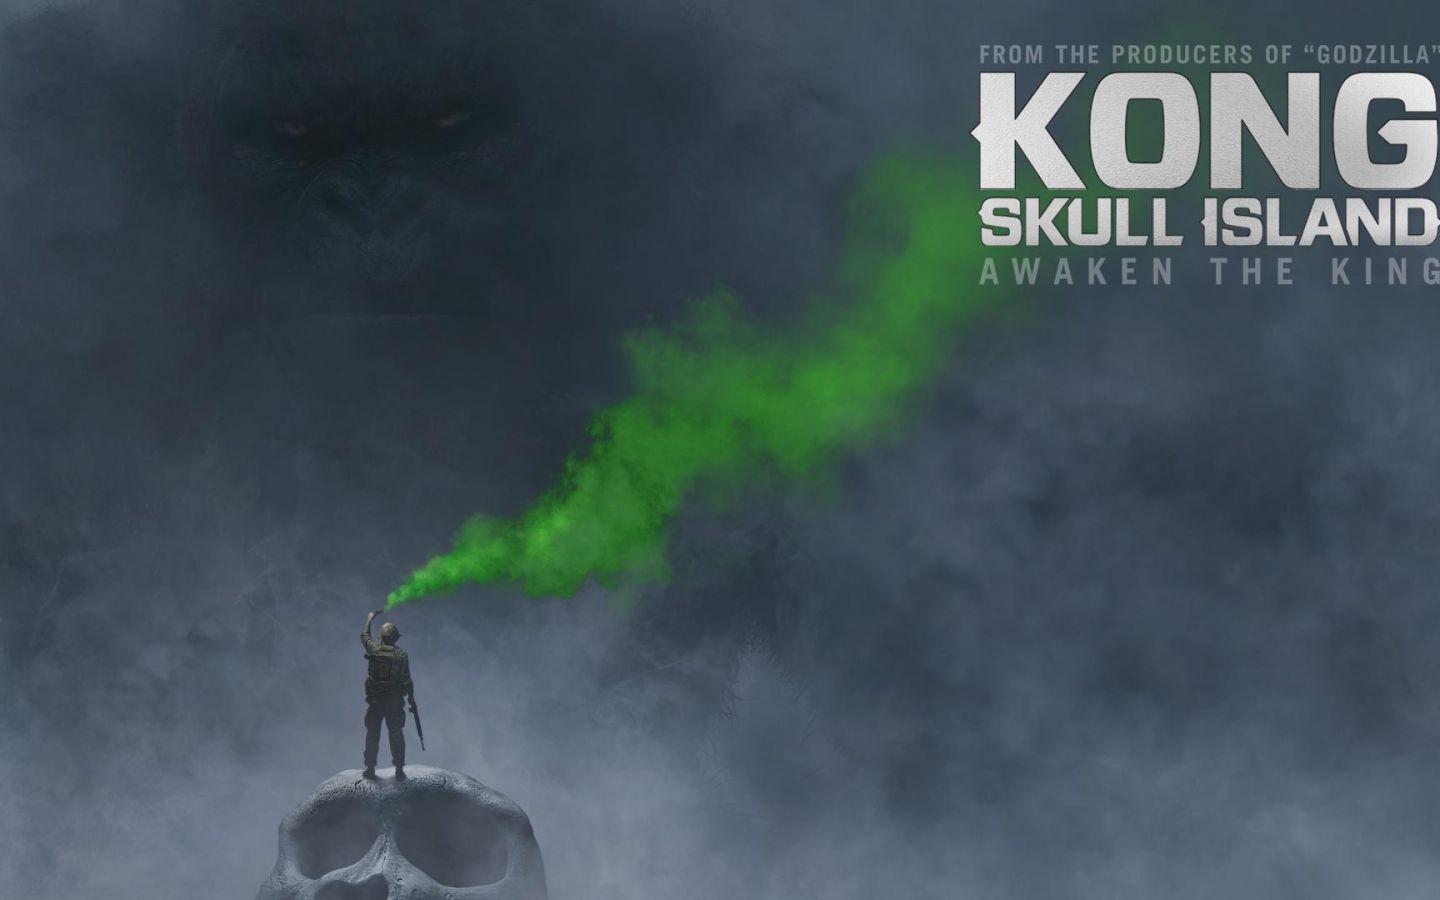 Фильм Конг: Остров черепа | Kong: Skull Island - лучшие обои для рабочего стола